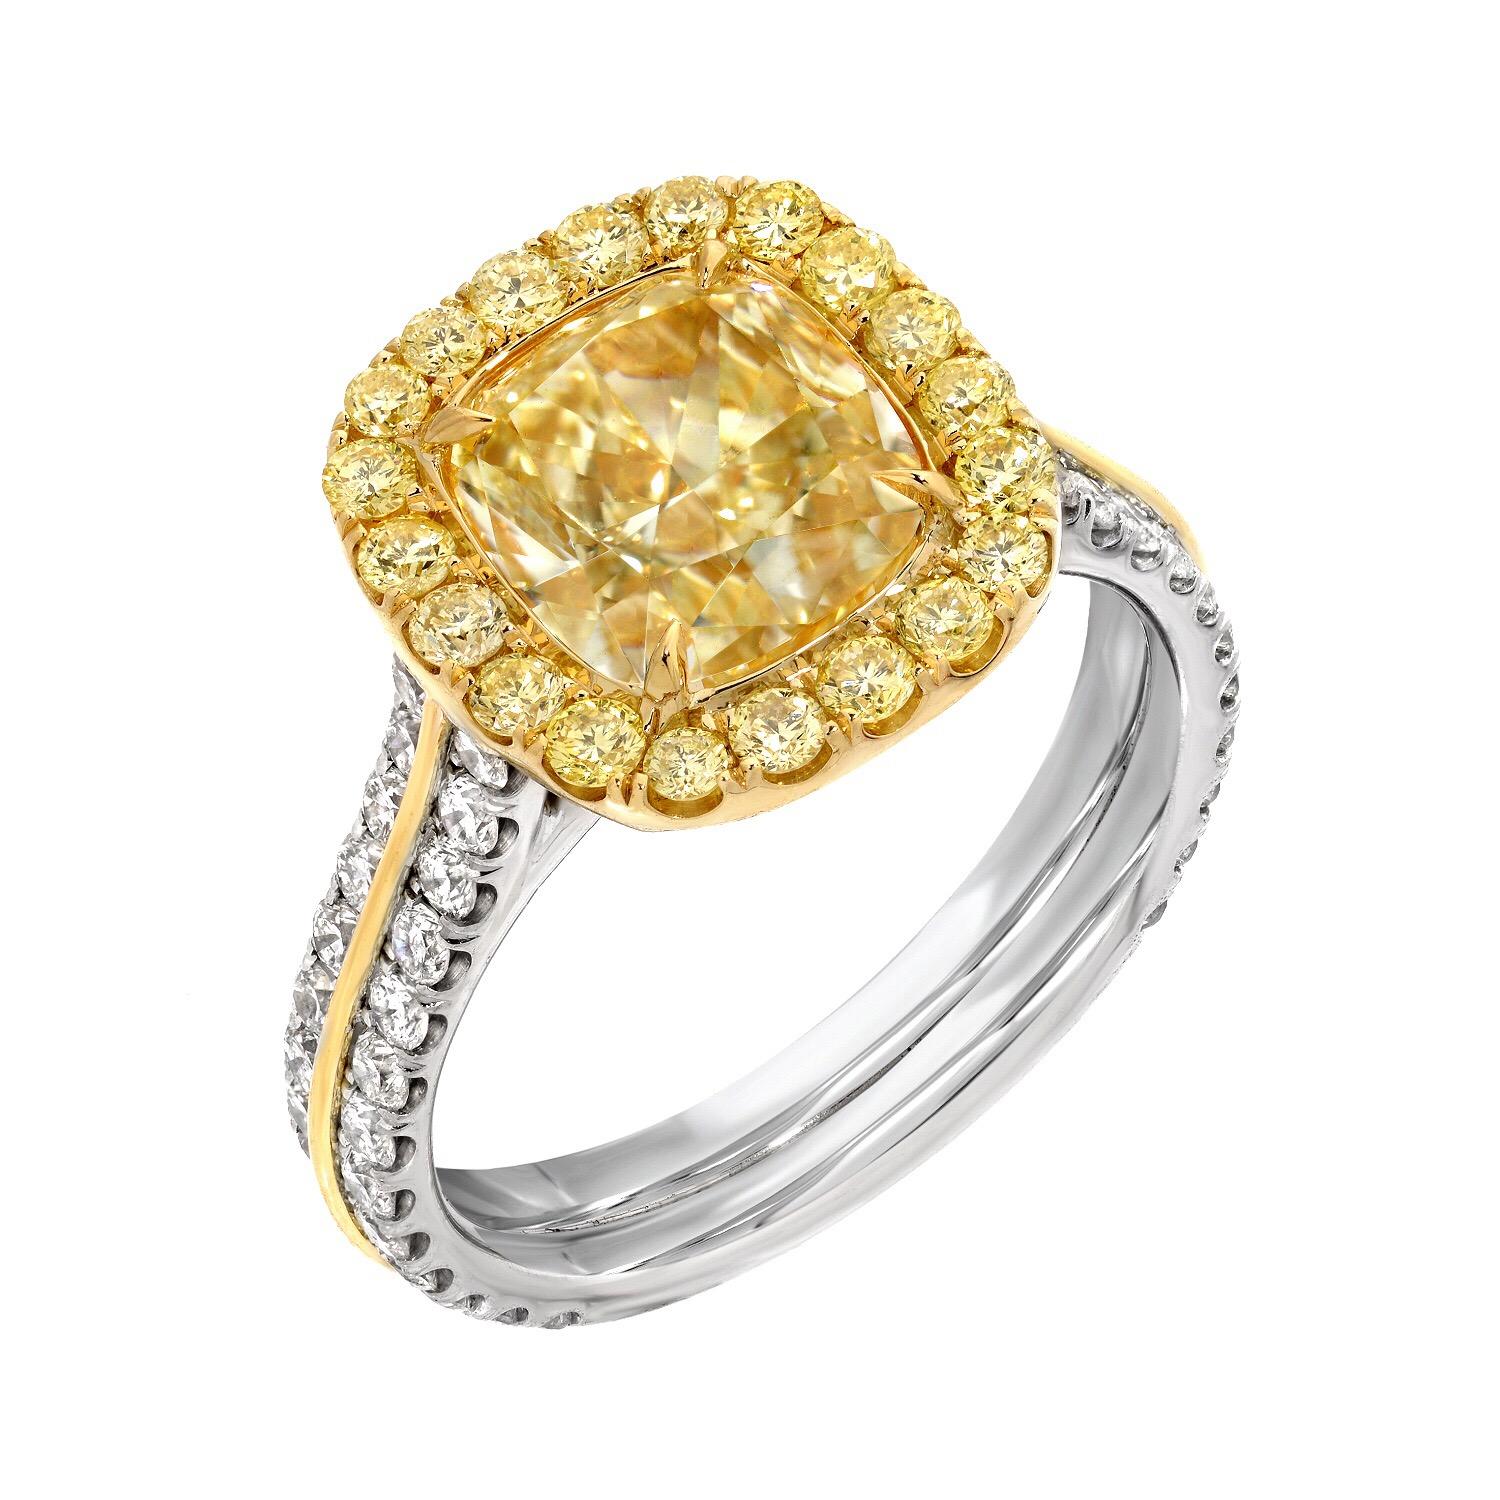 Ring aus Platin und 18 Karat Gelbgold, besetzt mit einem erstklassigen, G.I.A.-zertifizierten, 2,40 Karat schweren Fancy Light Yellow-Diamanten im Kissenschliff, Reinheit VS2, umgeben von runden Fancy Yellow-Diamanten von insgesamt 0,37 Karat und